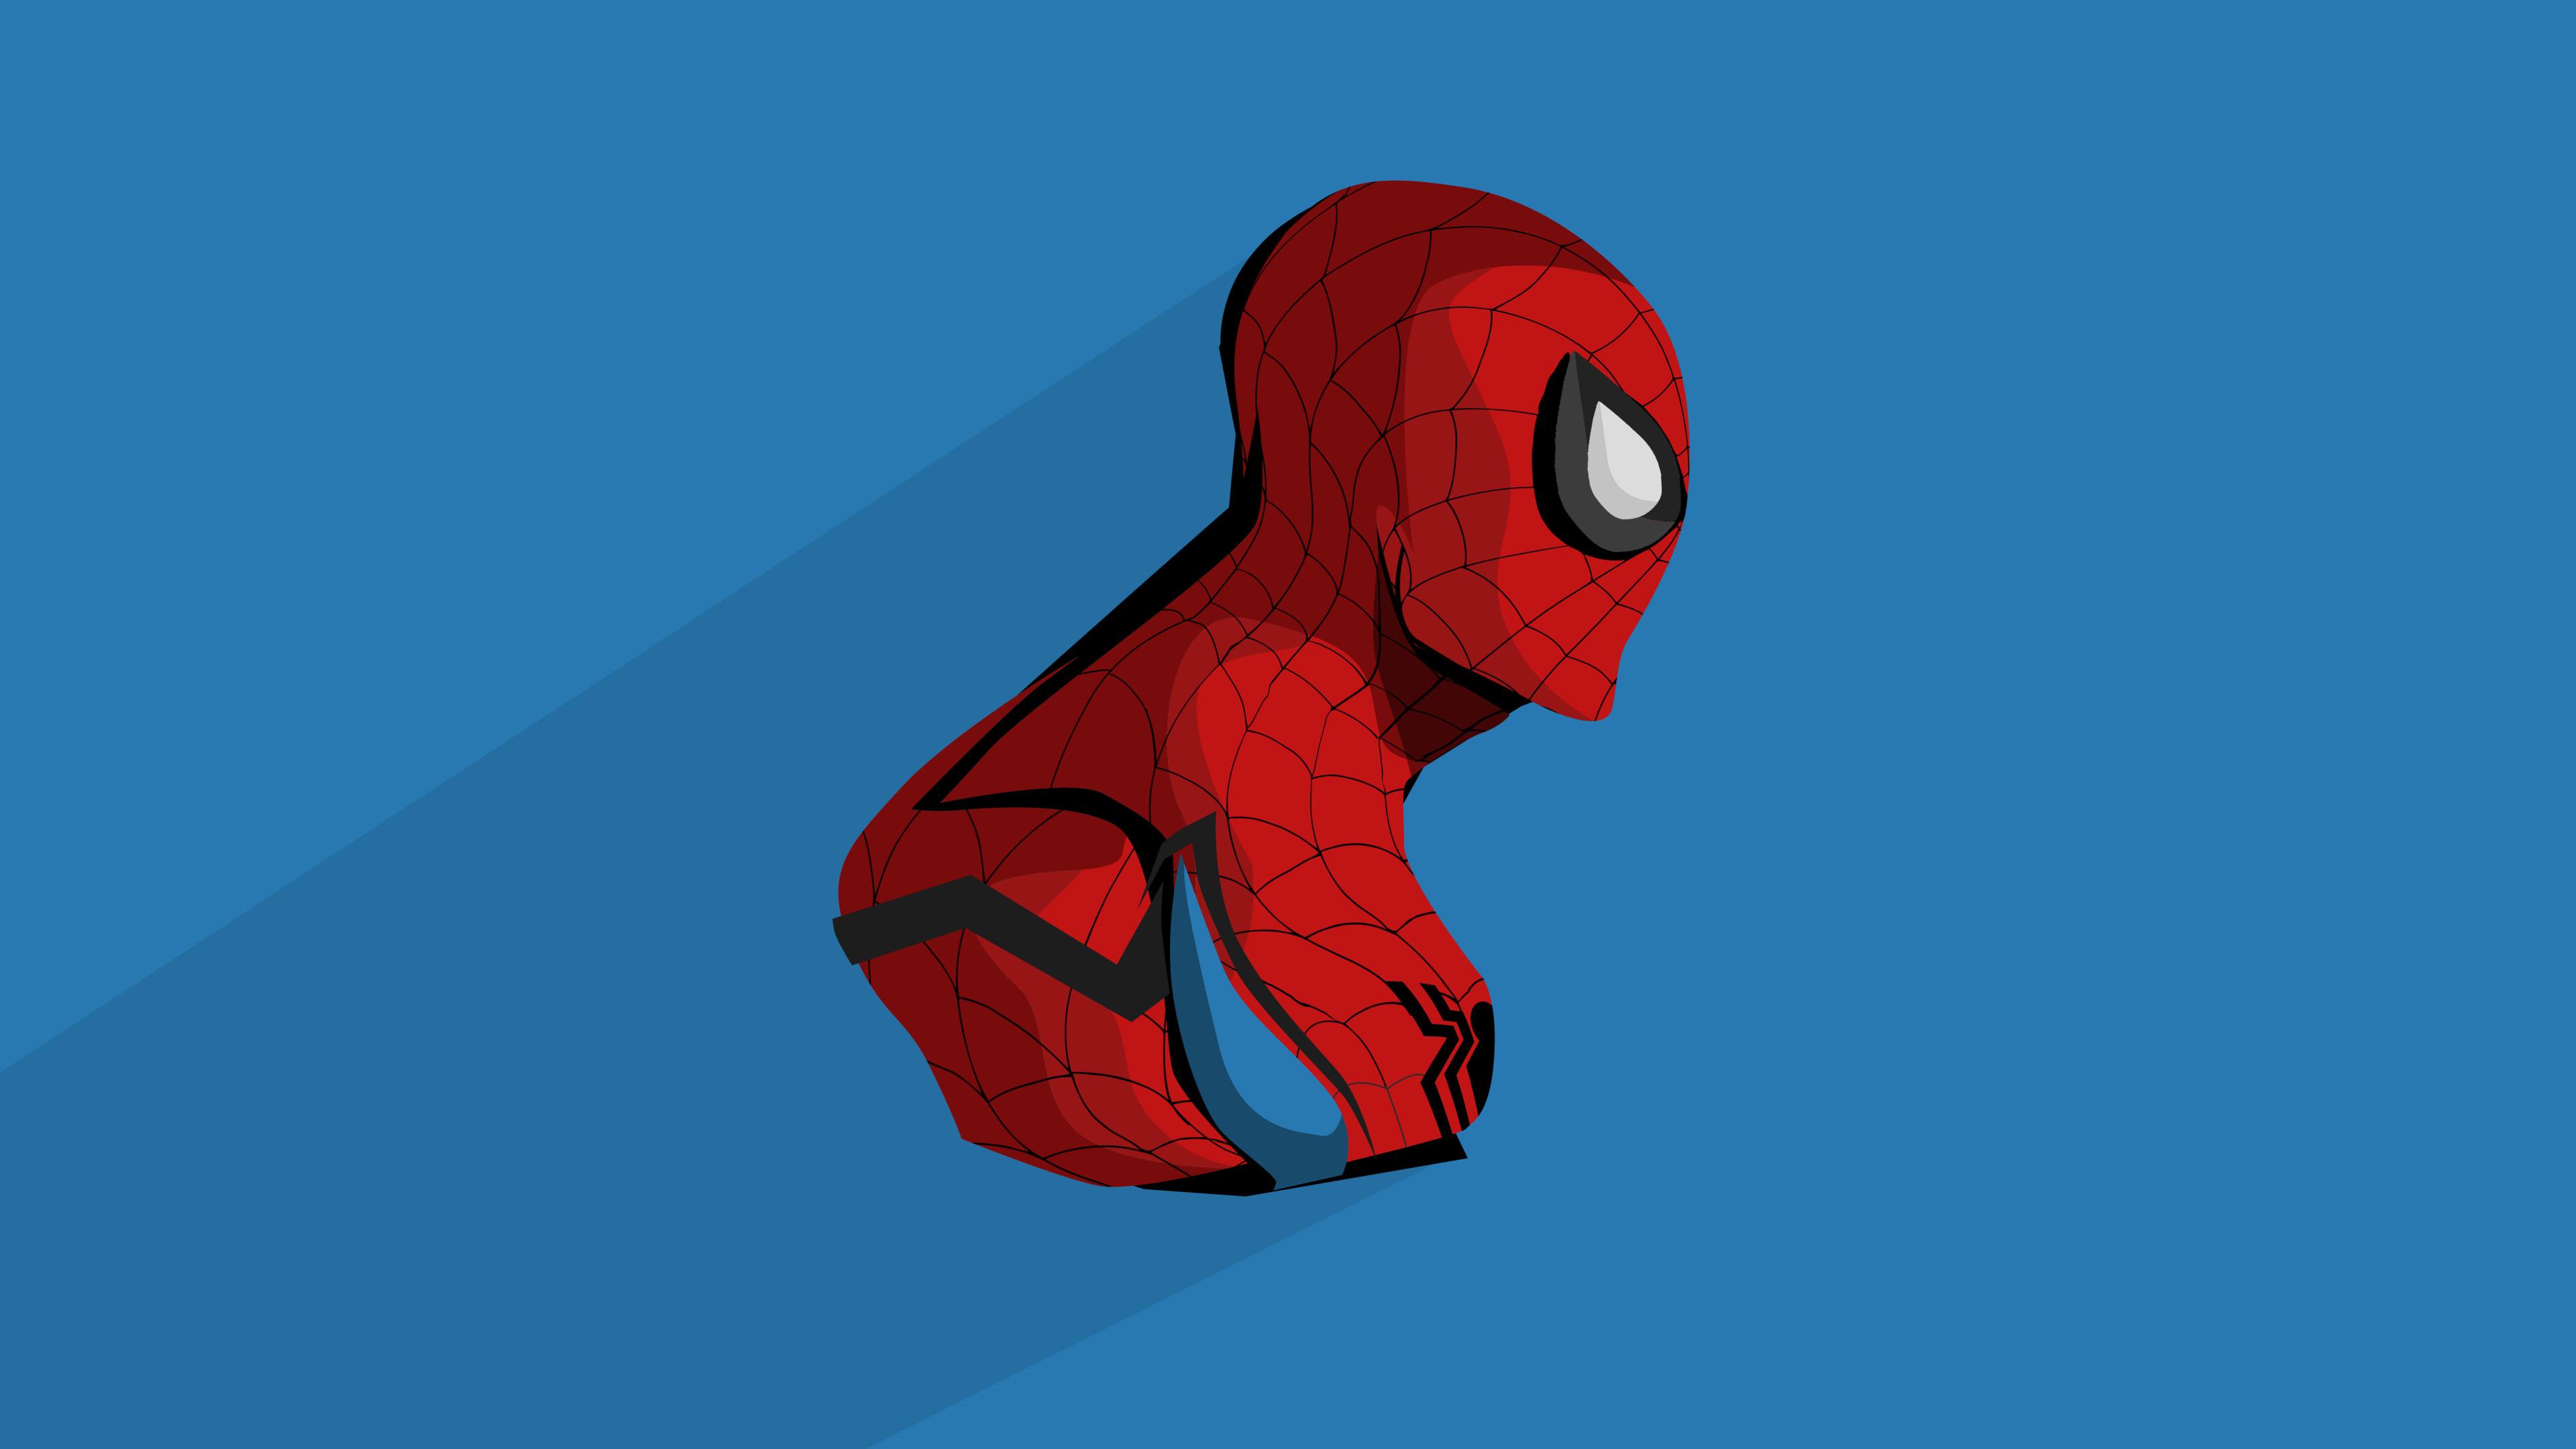 Spider Man Minimal Artwork 4K Wallpaper